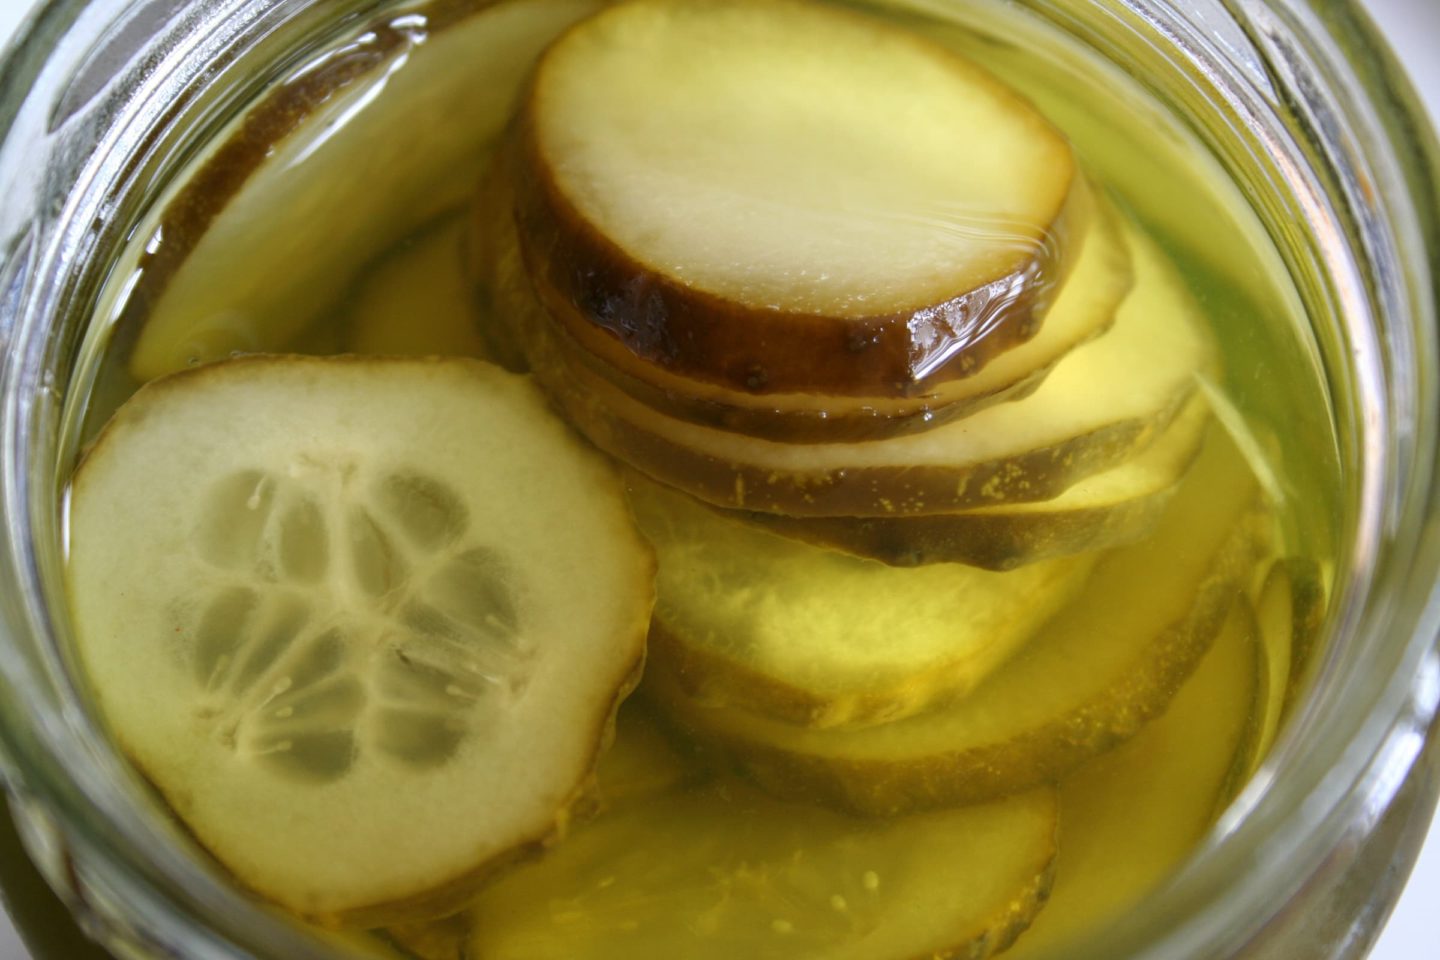 Pickles Preserved In Brine Or Vinegar